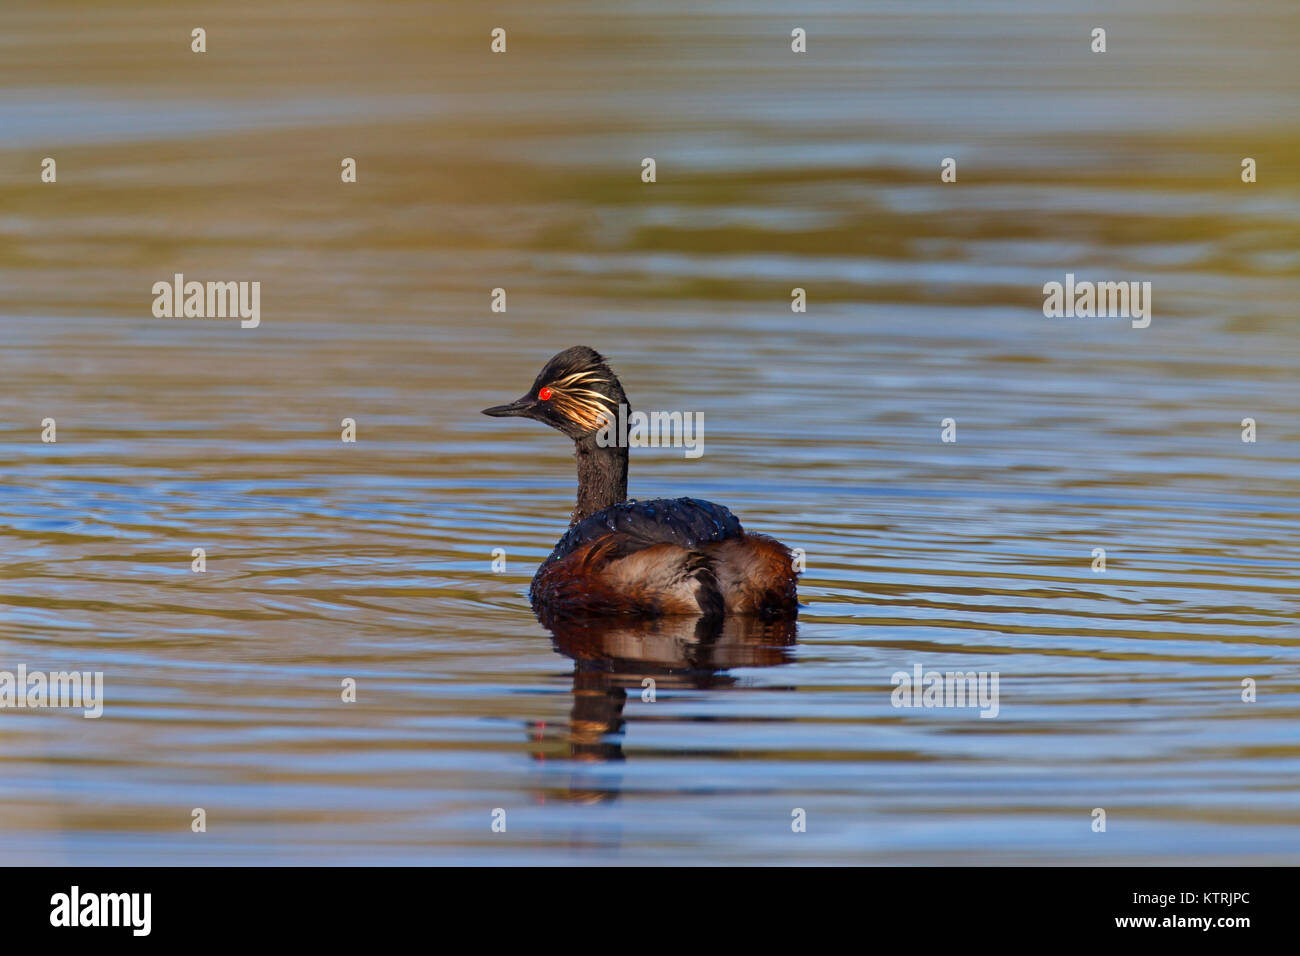 Black-necked grebe / eared grebe (Podiceps nigricollis) swimming in breeding plumage in spring Stock Photo